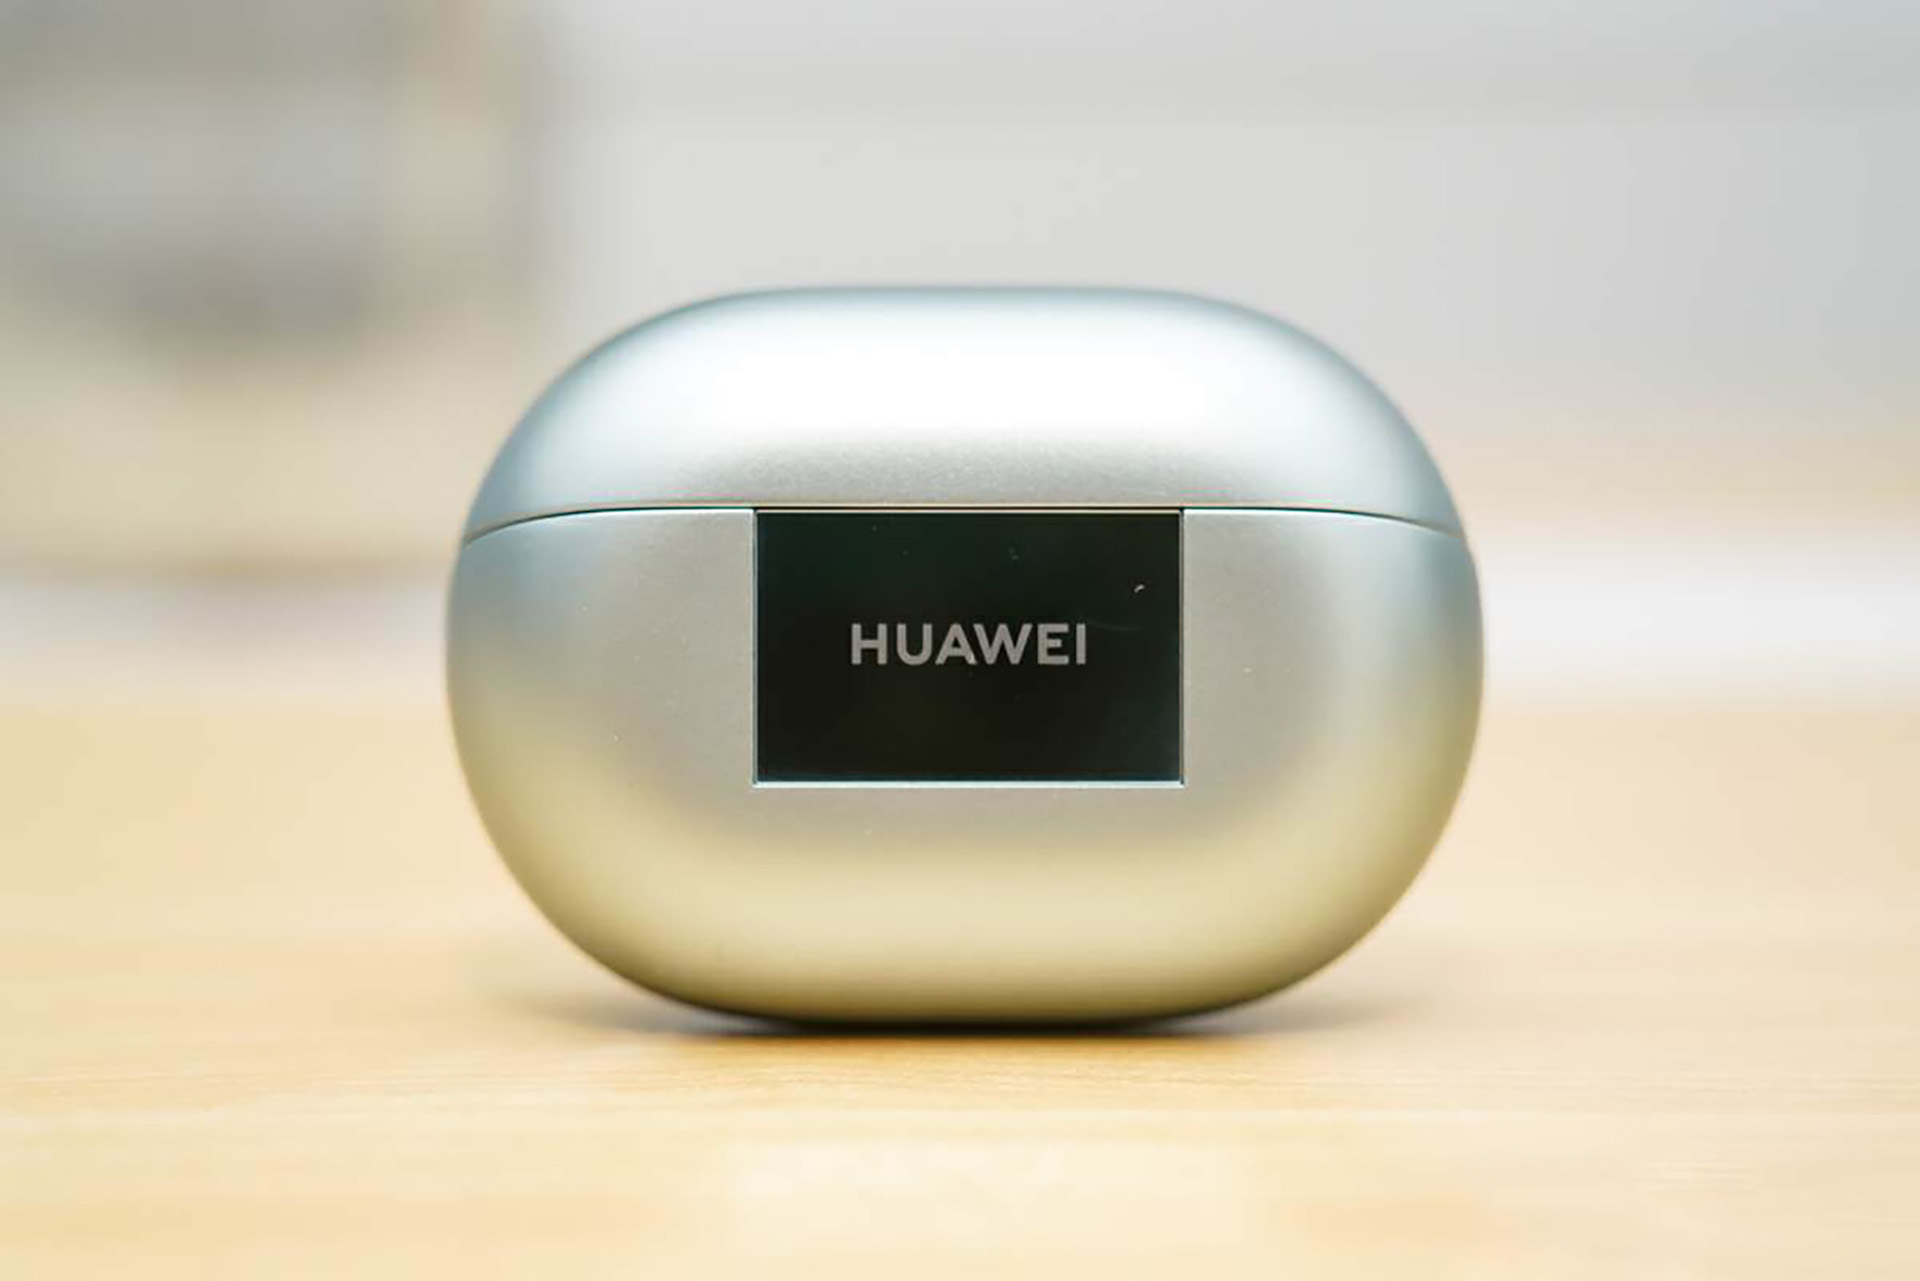 Huawei FreeBuds Pro 3 Review